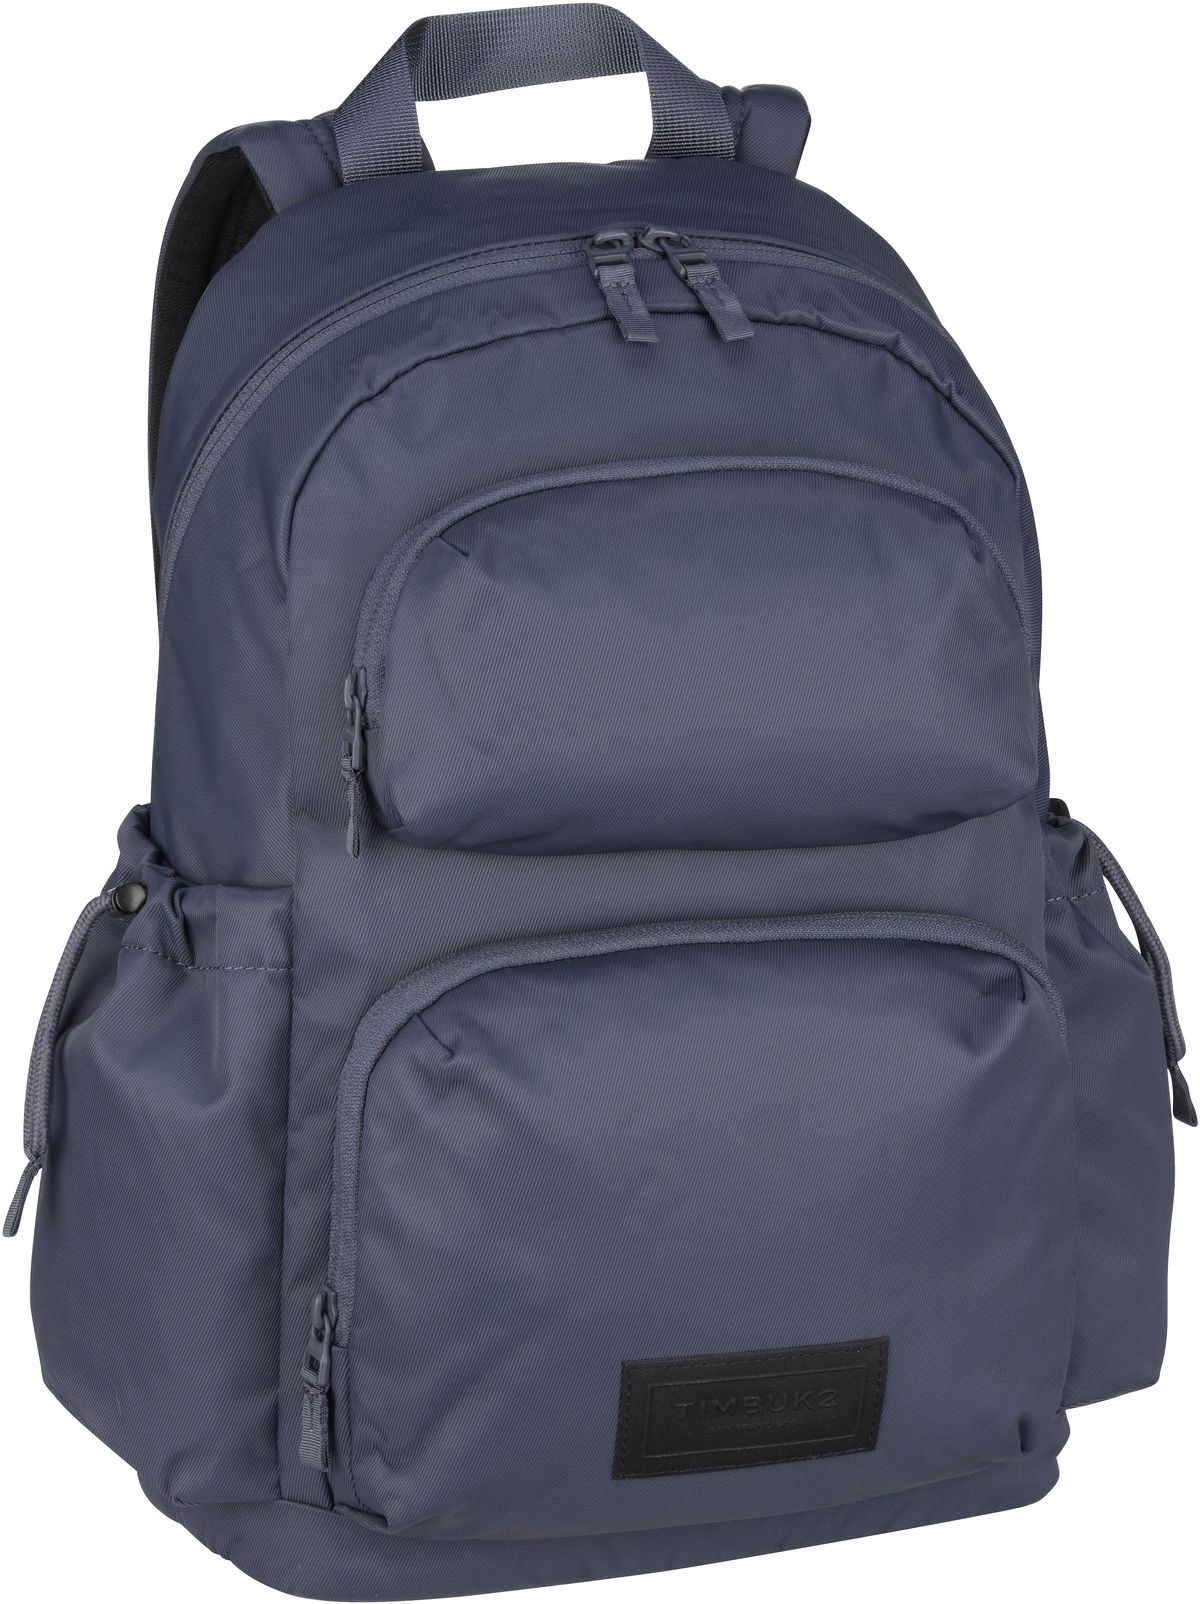 Timbuk2 Vapor Backpack - Granite